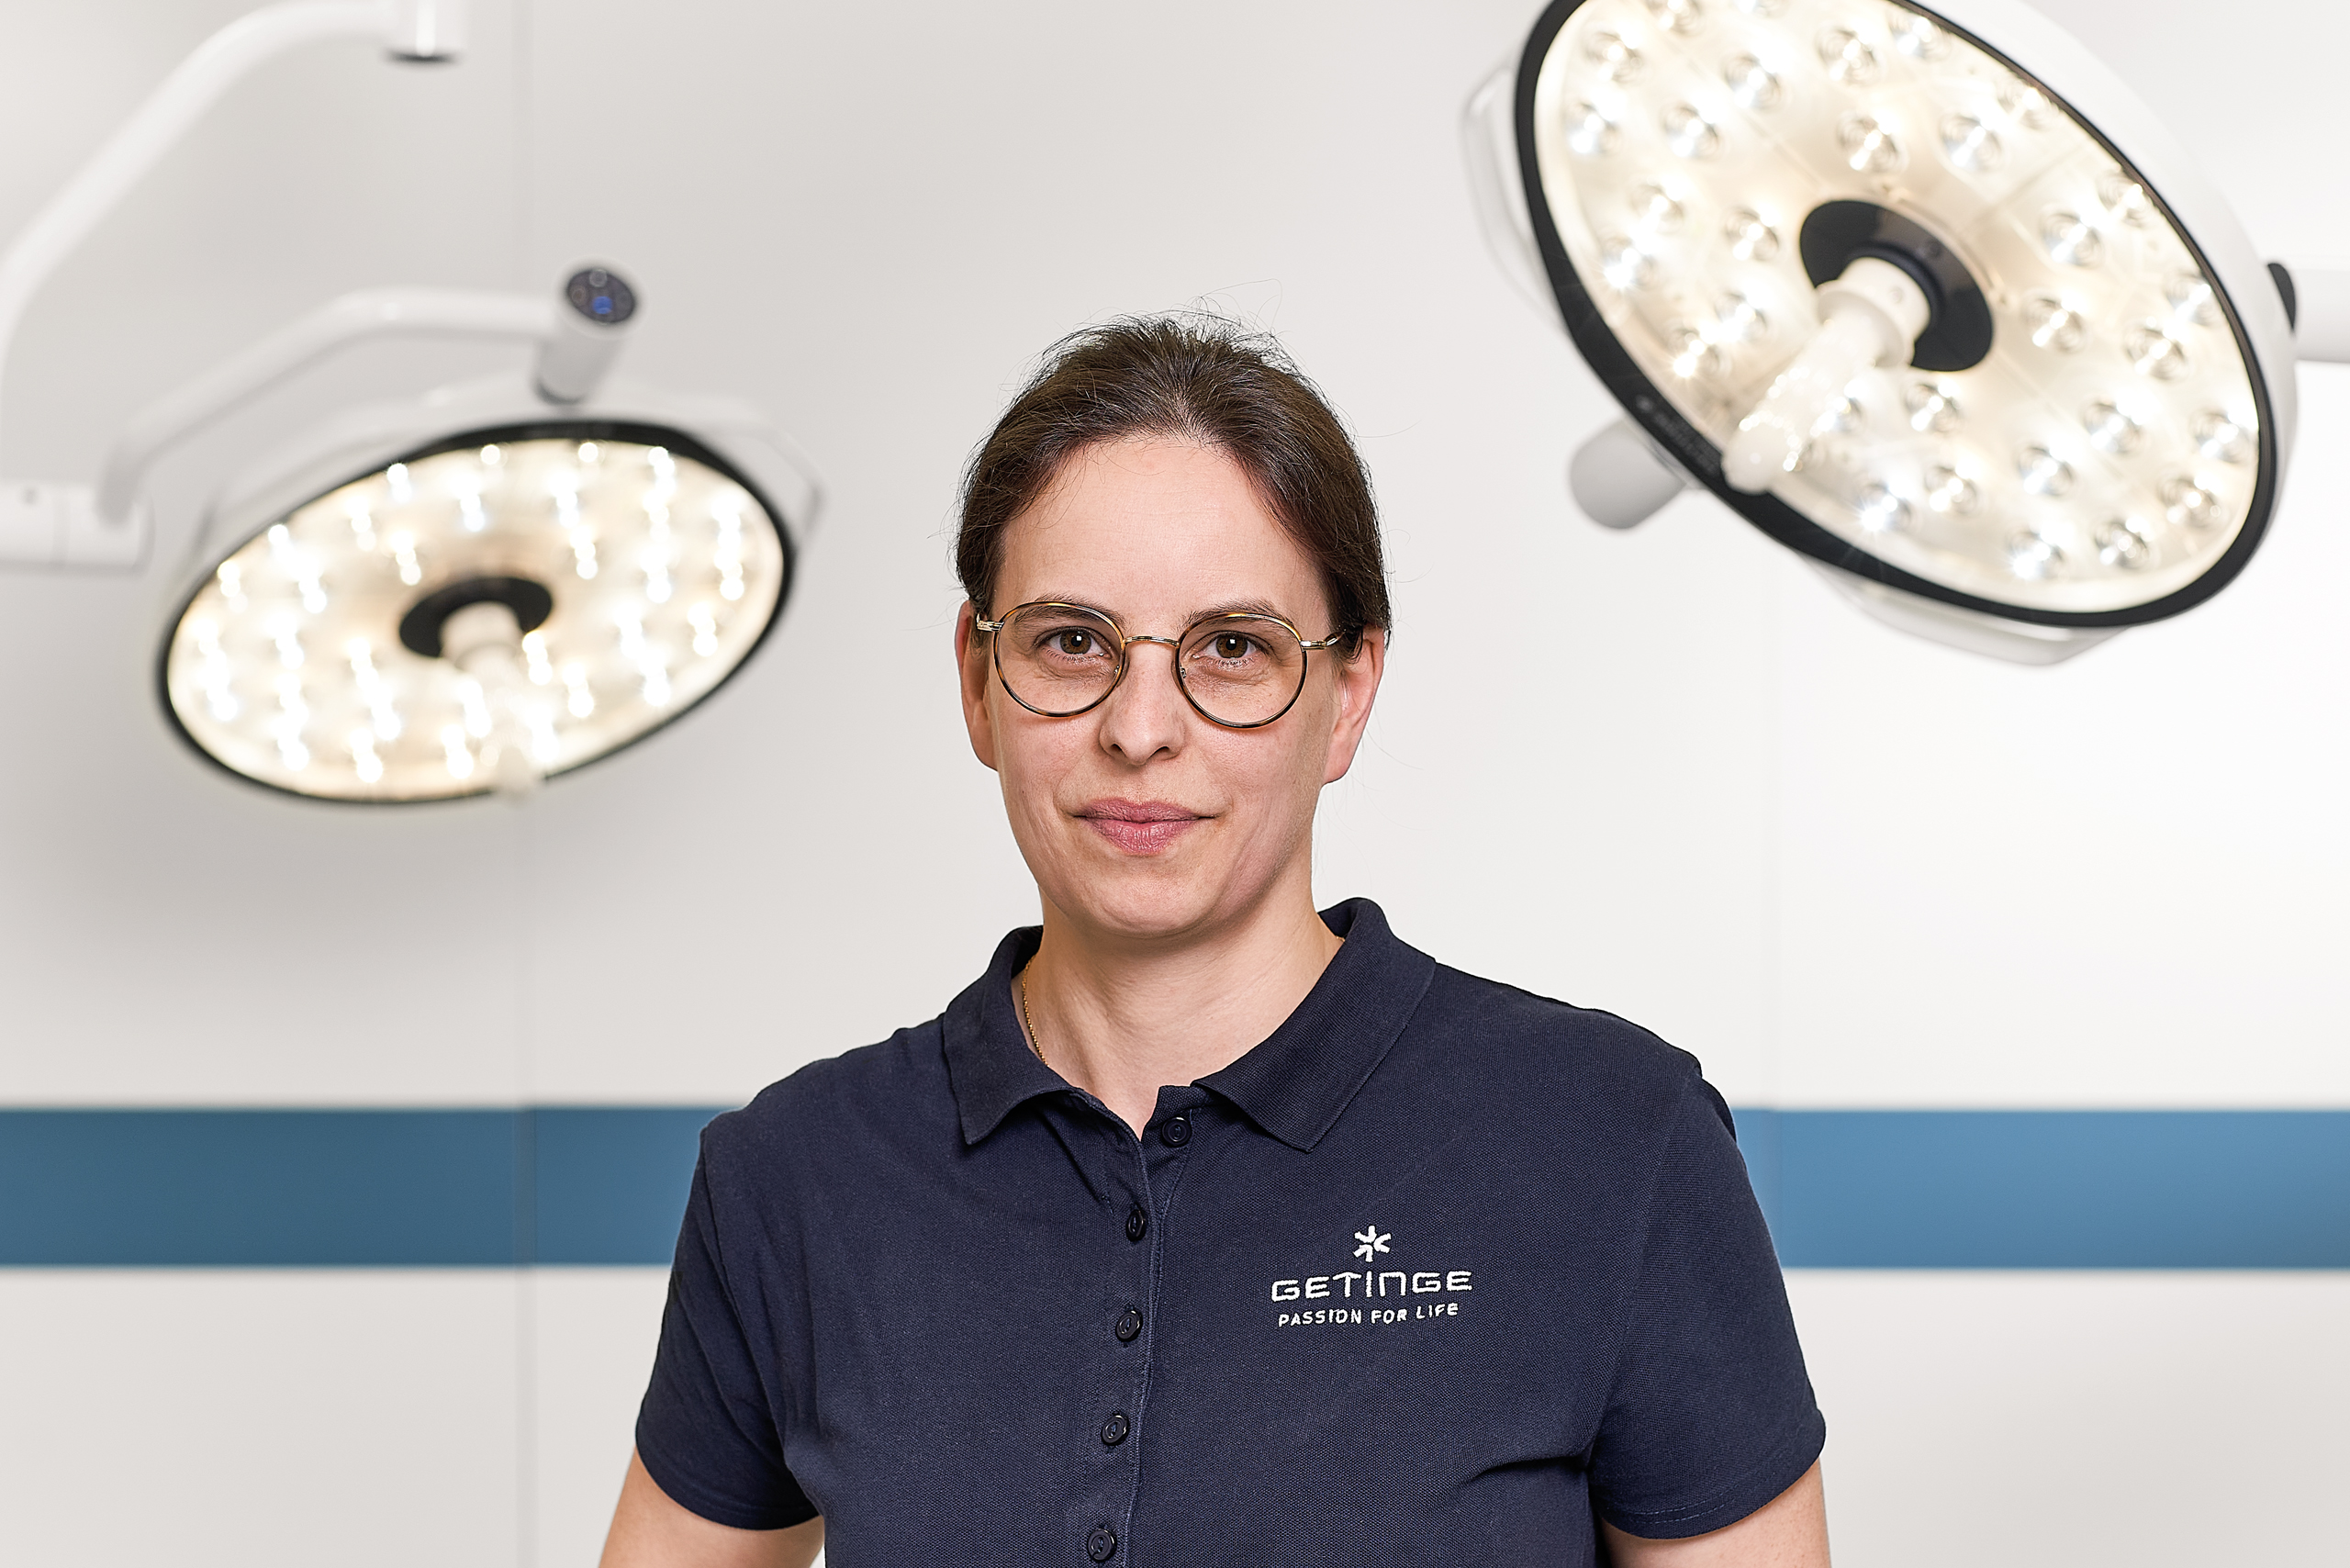 Aurélie Godin - Design Effectiveness Engineer at Getinge's global operating lights production center in France